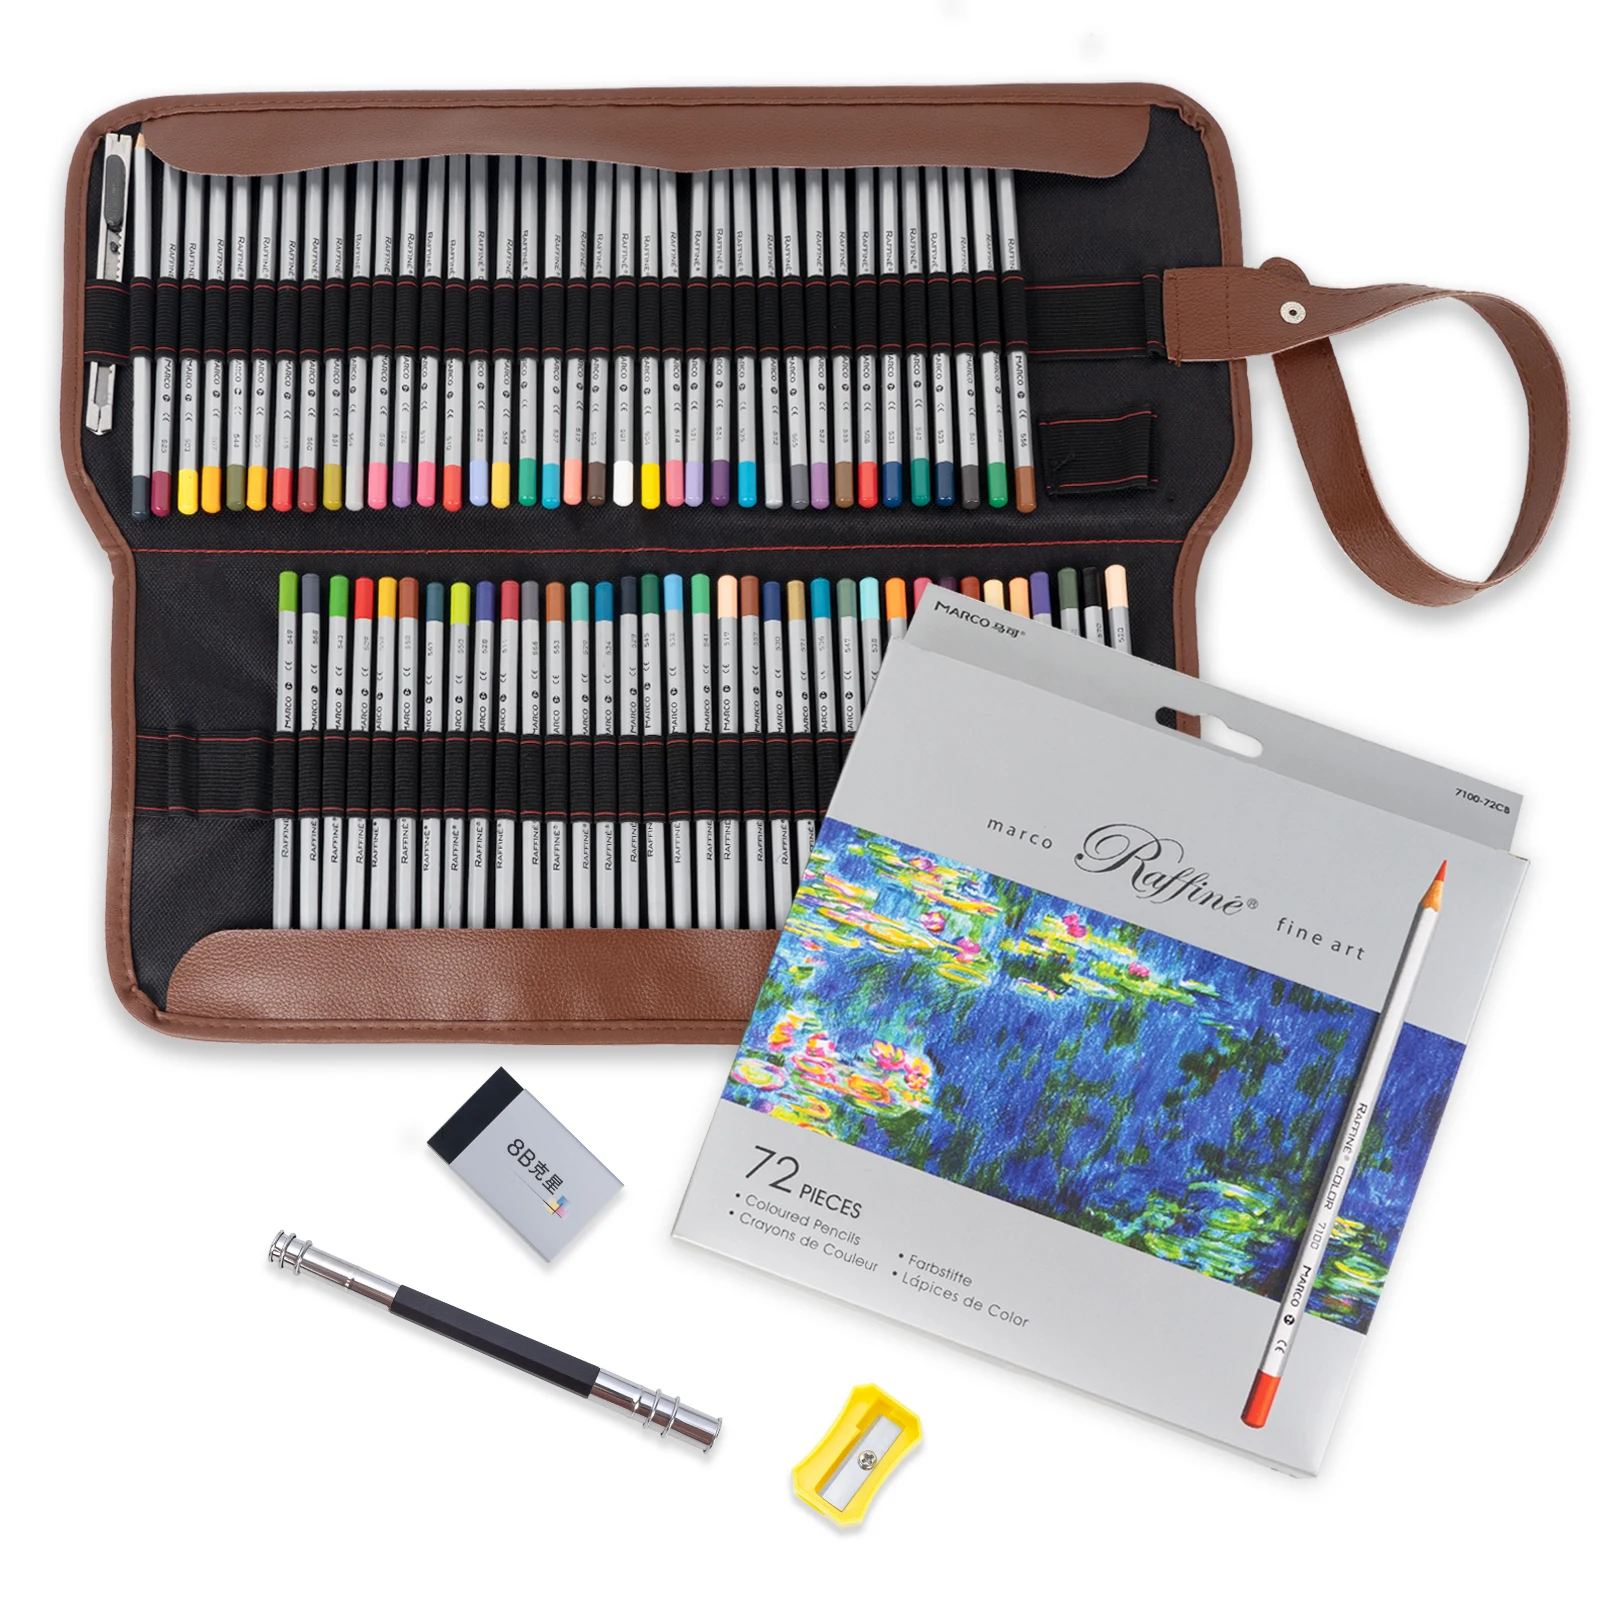 

Marco набор профессиональных масляных цветных карандашей 48/72 цветов, нетоксичные карандаши для рисования, фотография с холщовой сумкой для ка...